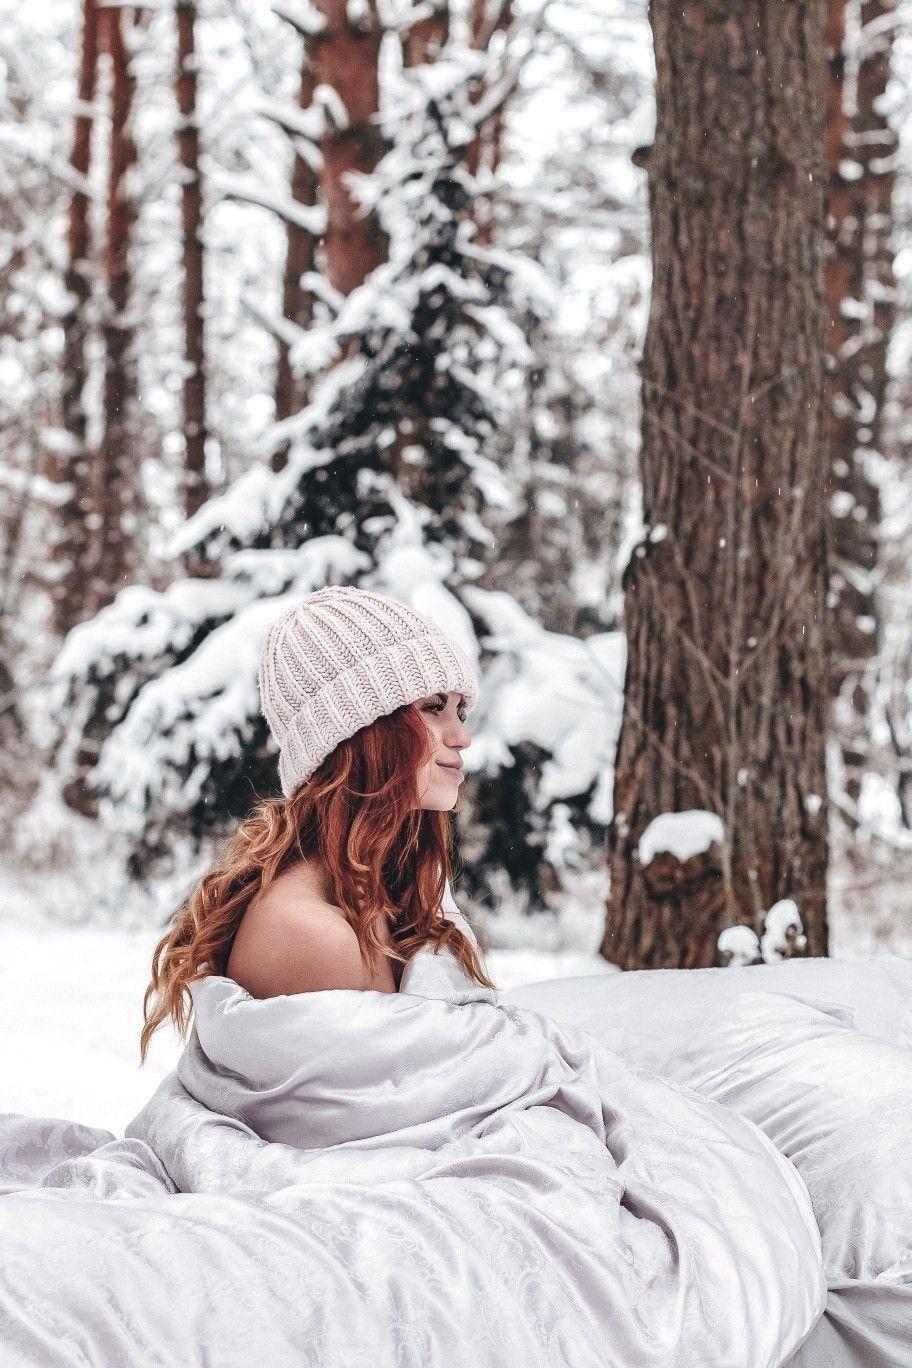 Идеи для фото в Инстаграм зимой дома селфи сэлфи на улице с подругой осенью  с парнем зимой весной летом рас… | Winter photography, Winter photoshoot,  Winter outfits